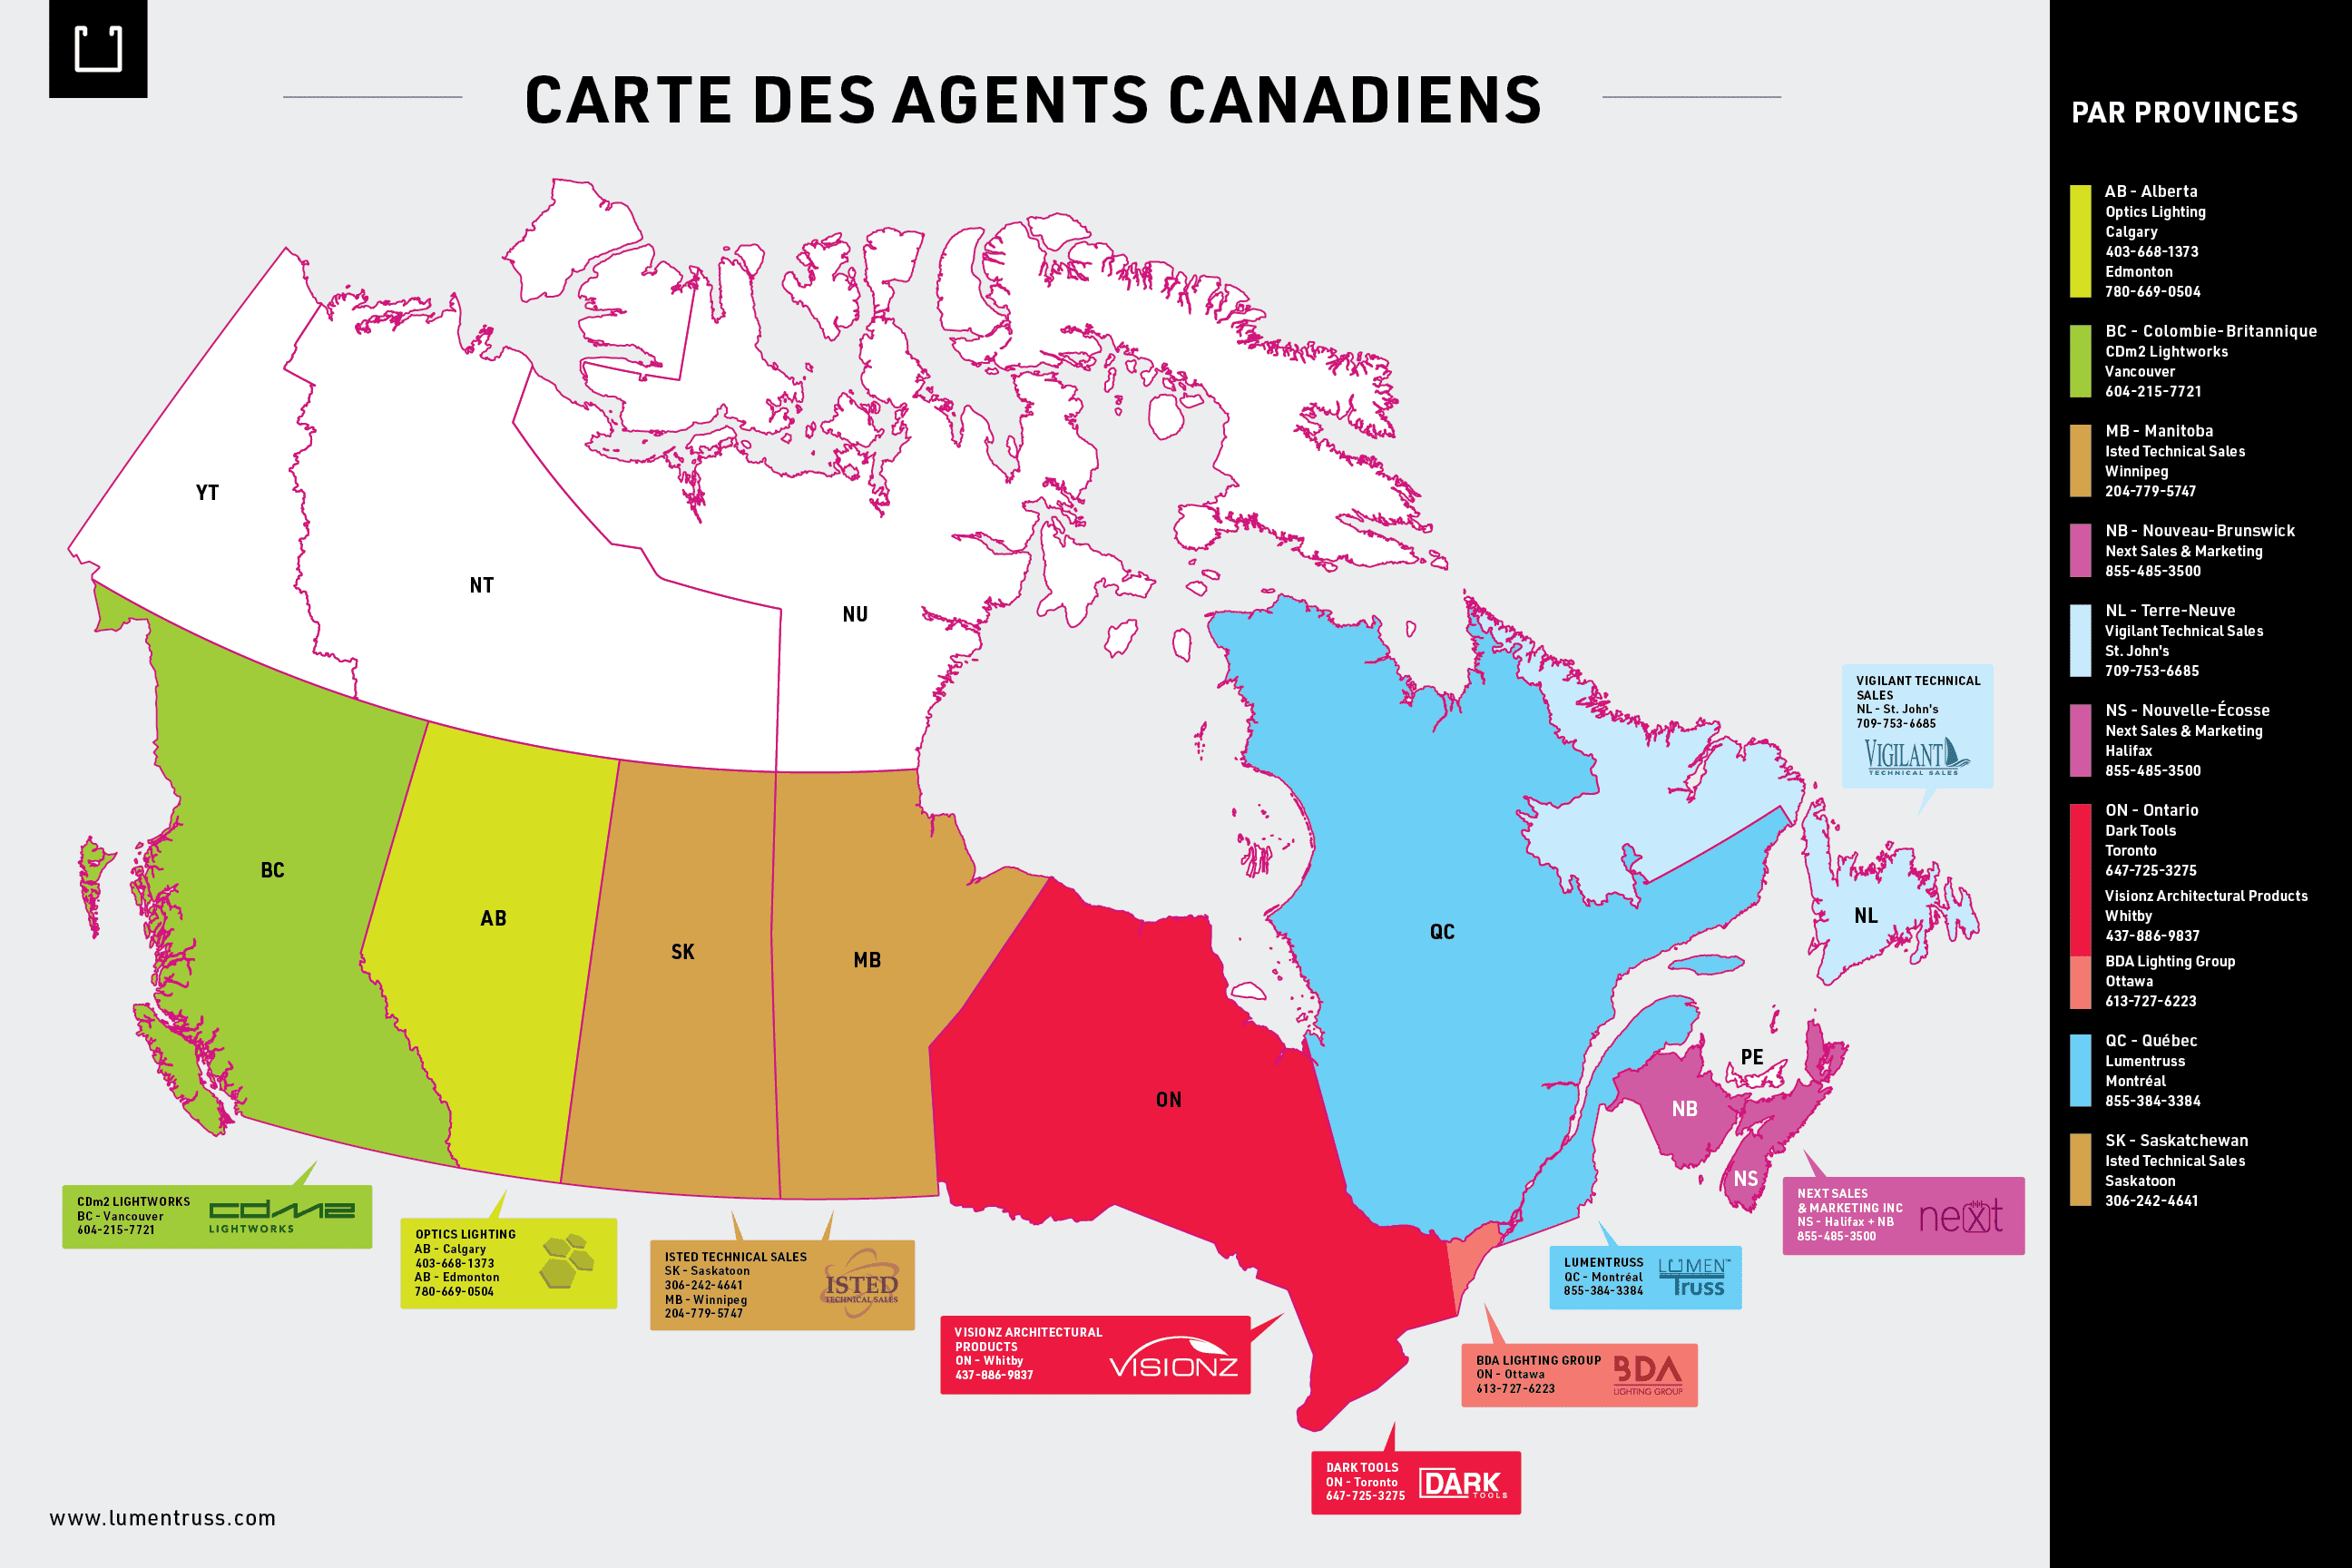 Carte des agents canadiens de LumenTruss